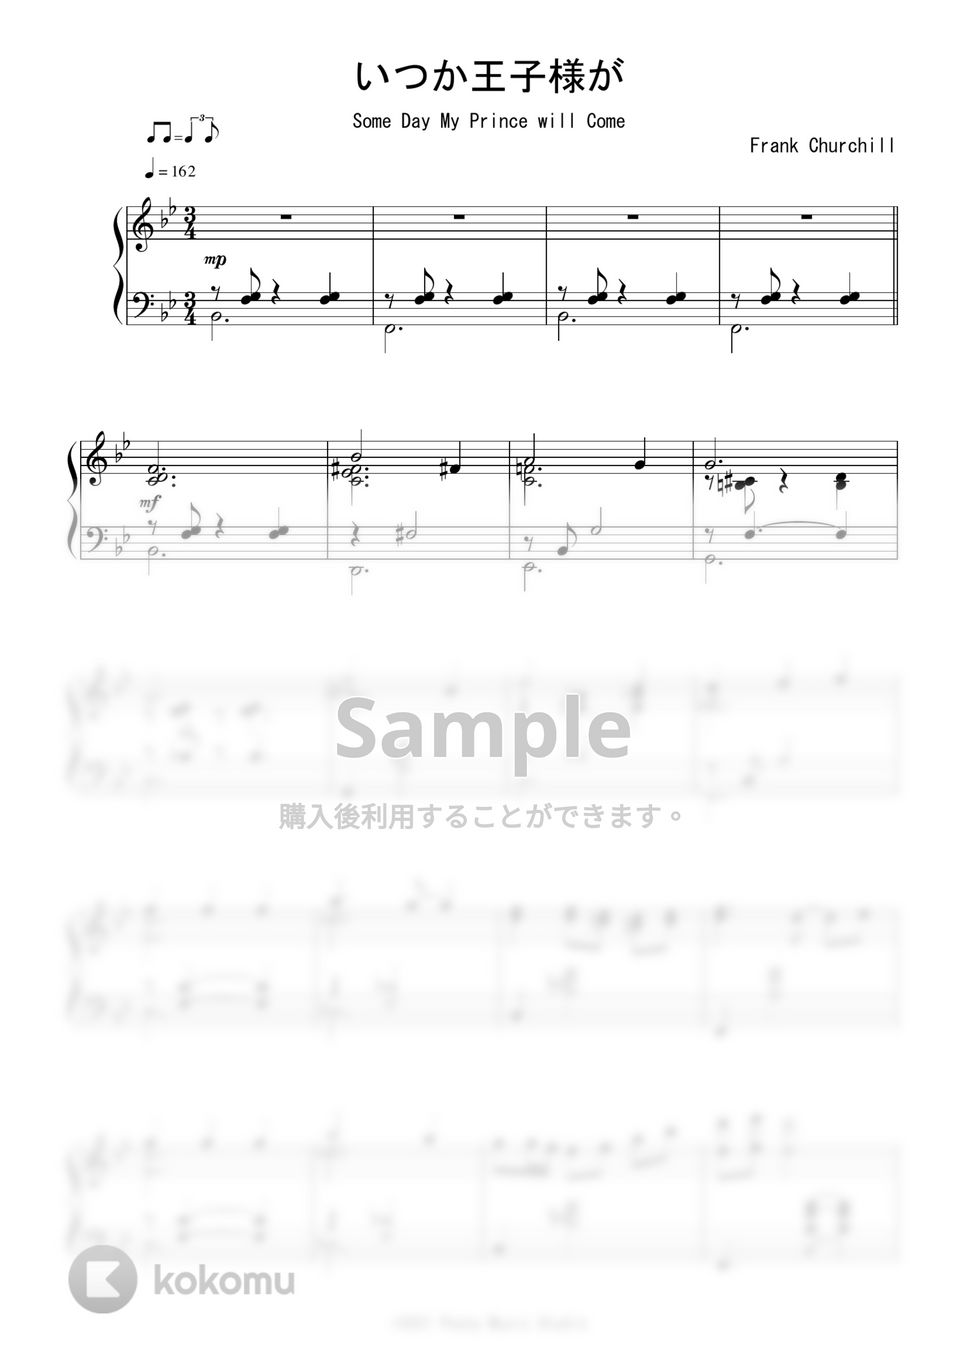 ディズニー映画『白雪姫』OST - いつか王子様が (Jazz Ver.) by Peony